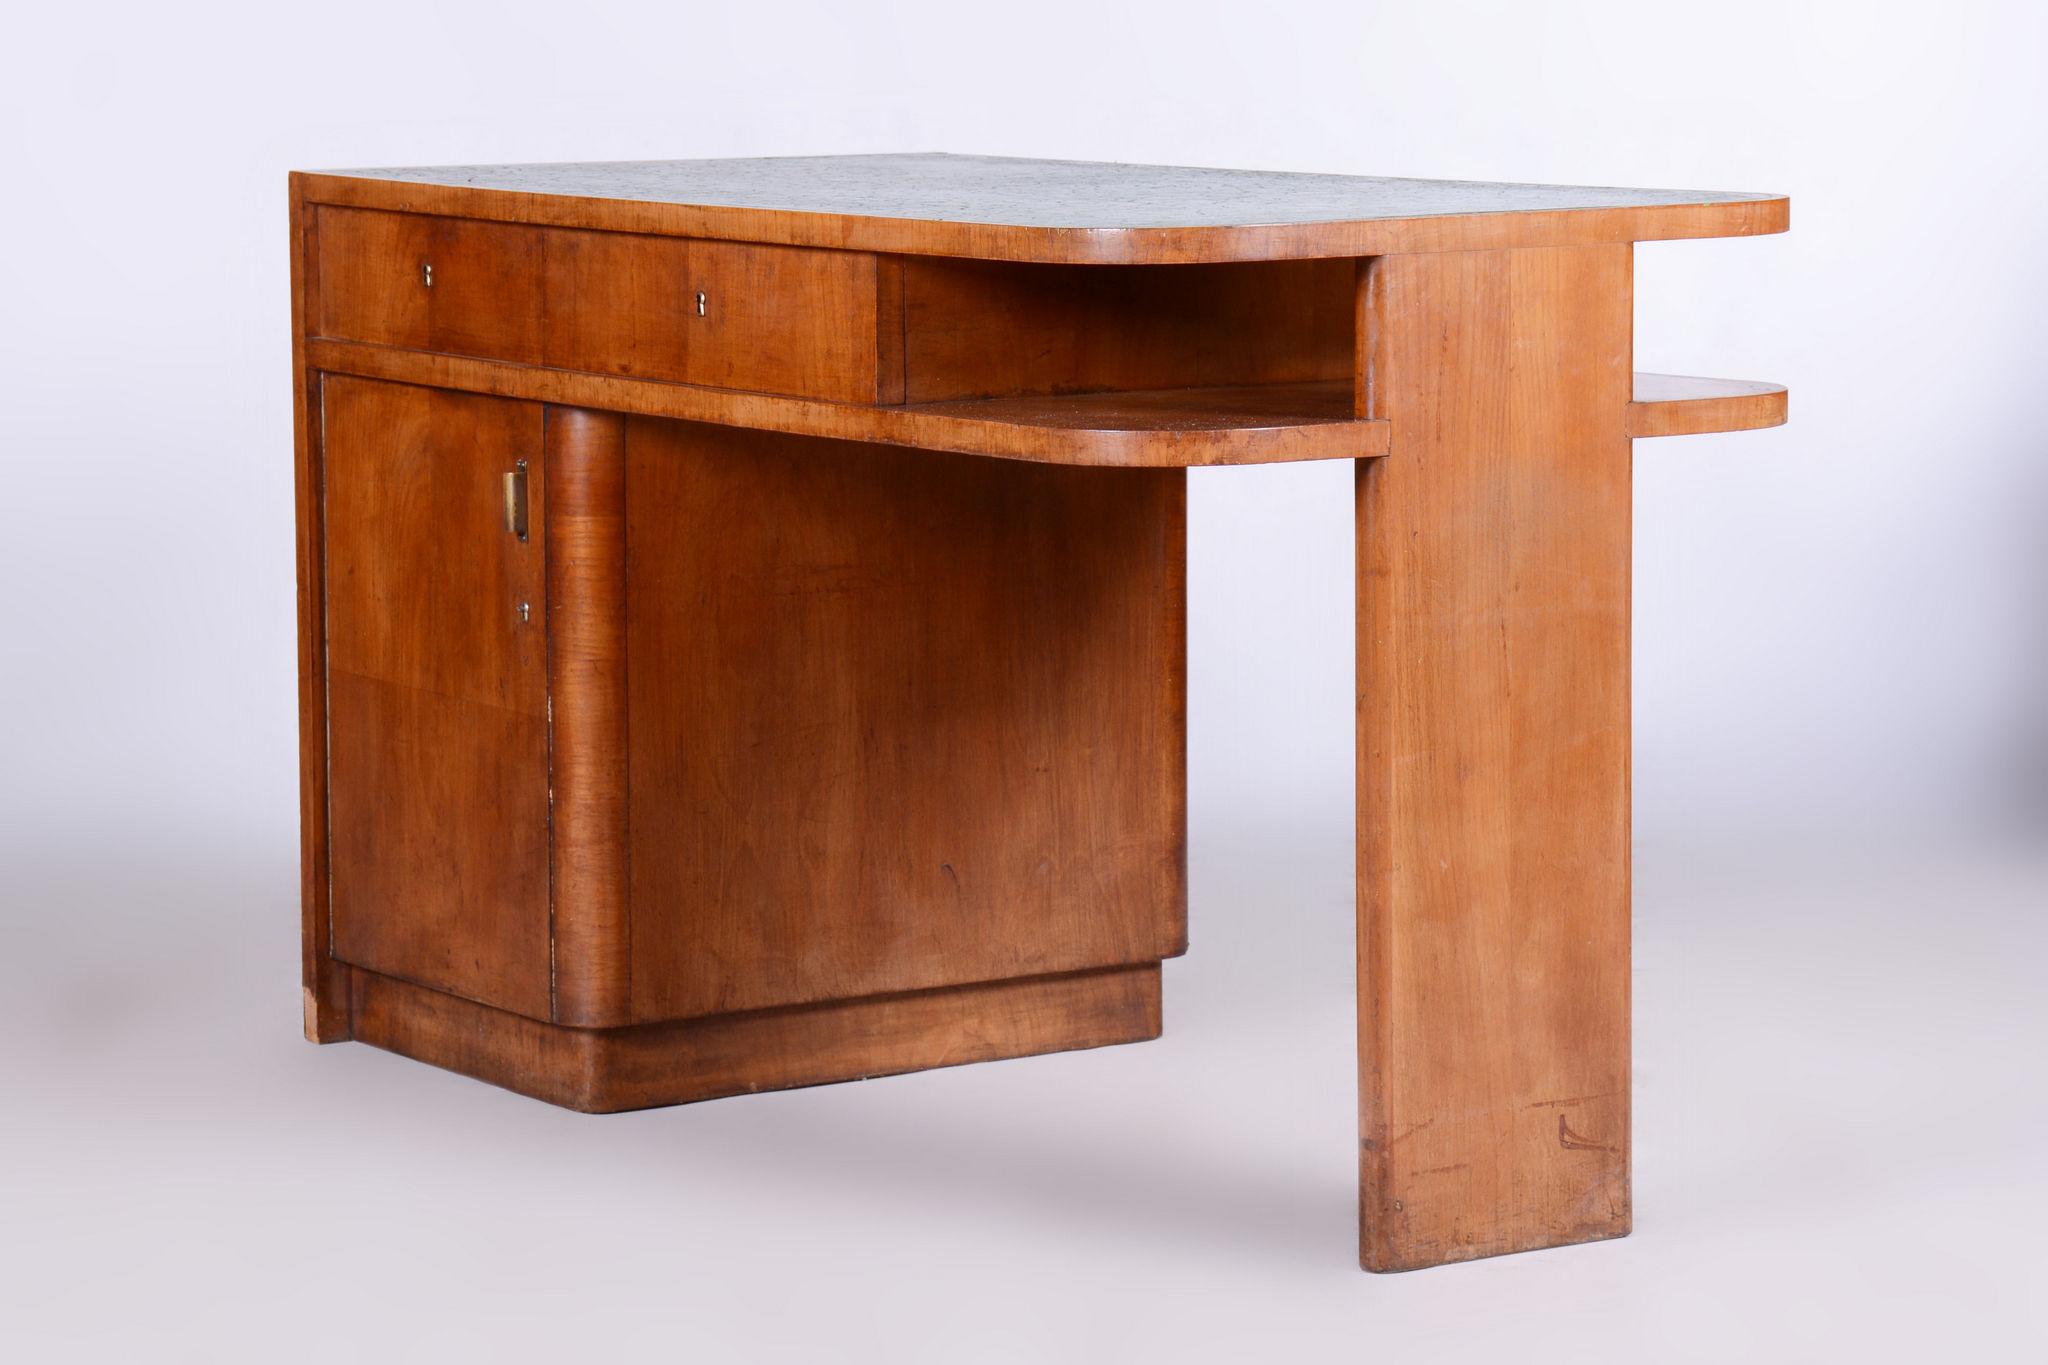 Restored ArtDeco Cherrytree Writing Desk, J. Halabala, UP Zavody, Czechia, 1930s For Sale 1